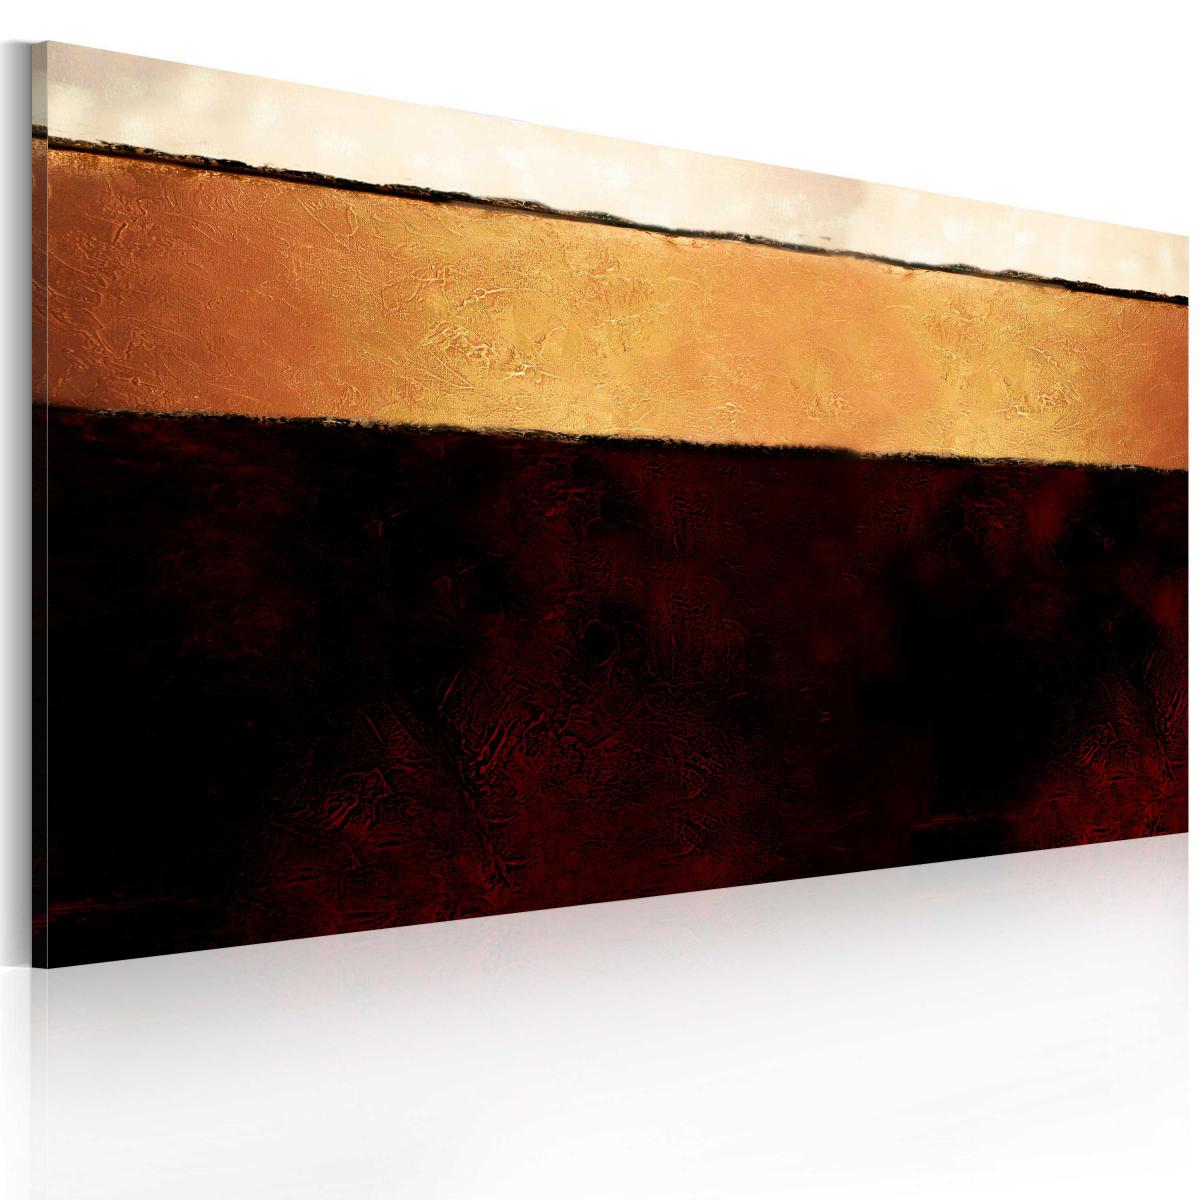 Bimago - Tableau peint à la main - Couches de la Terre - Décoration, image, art | 120x60 cm | - Cloisons